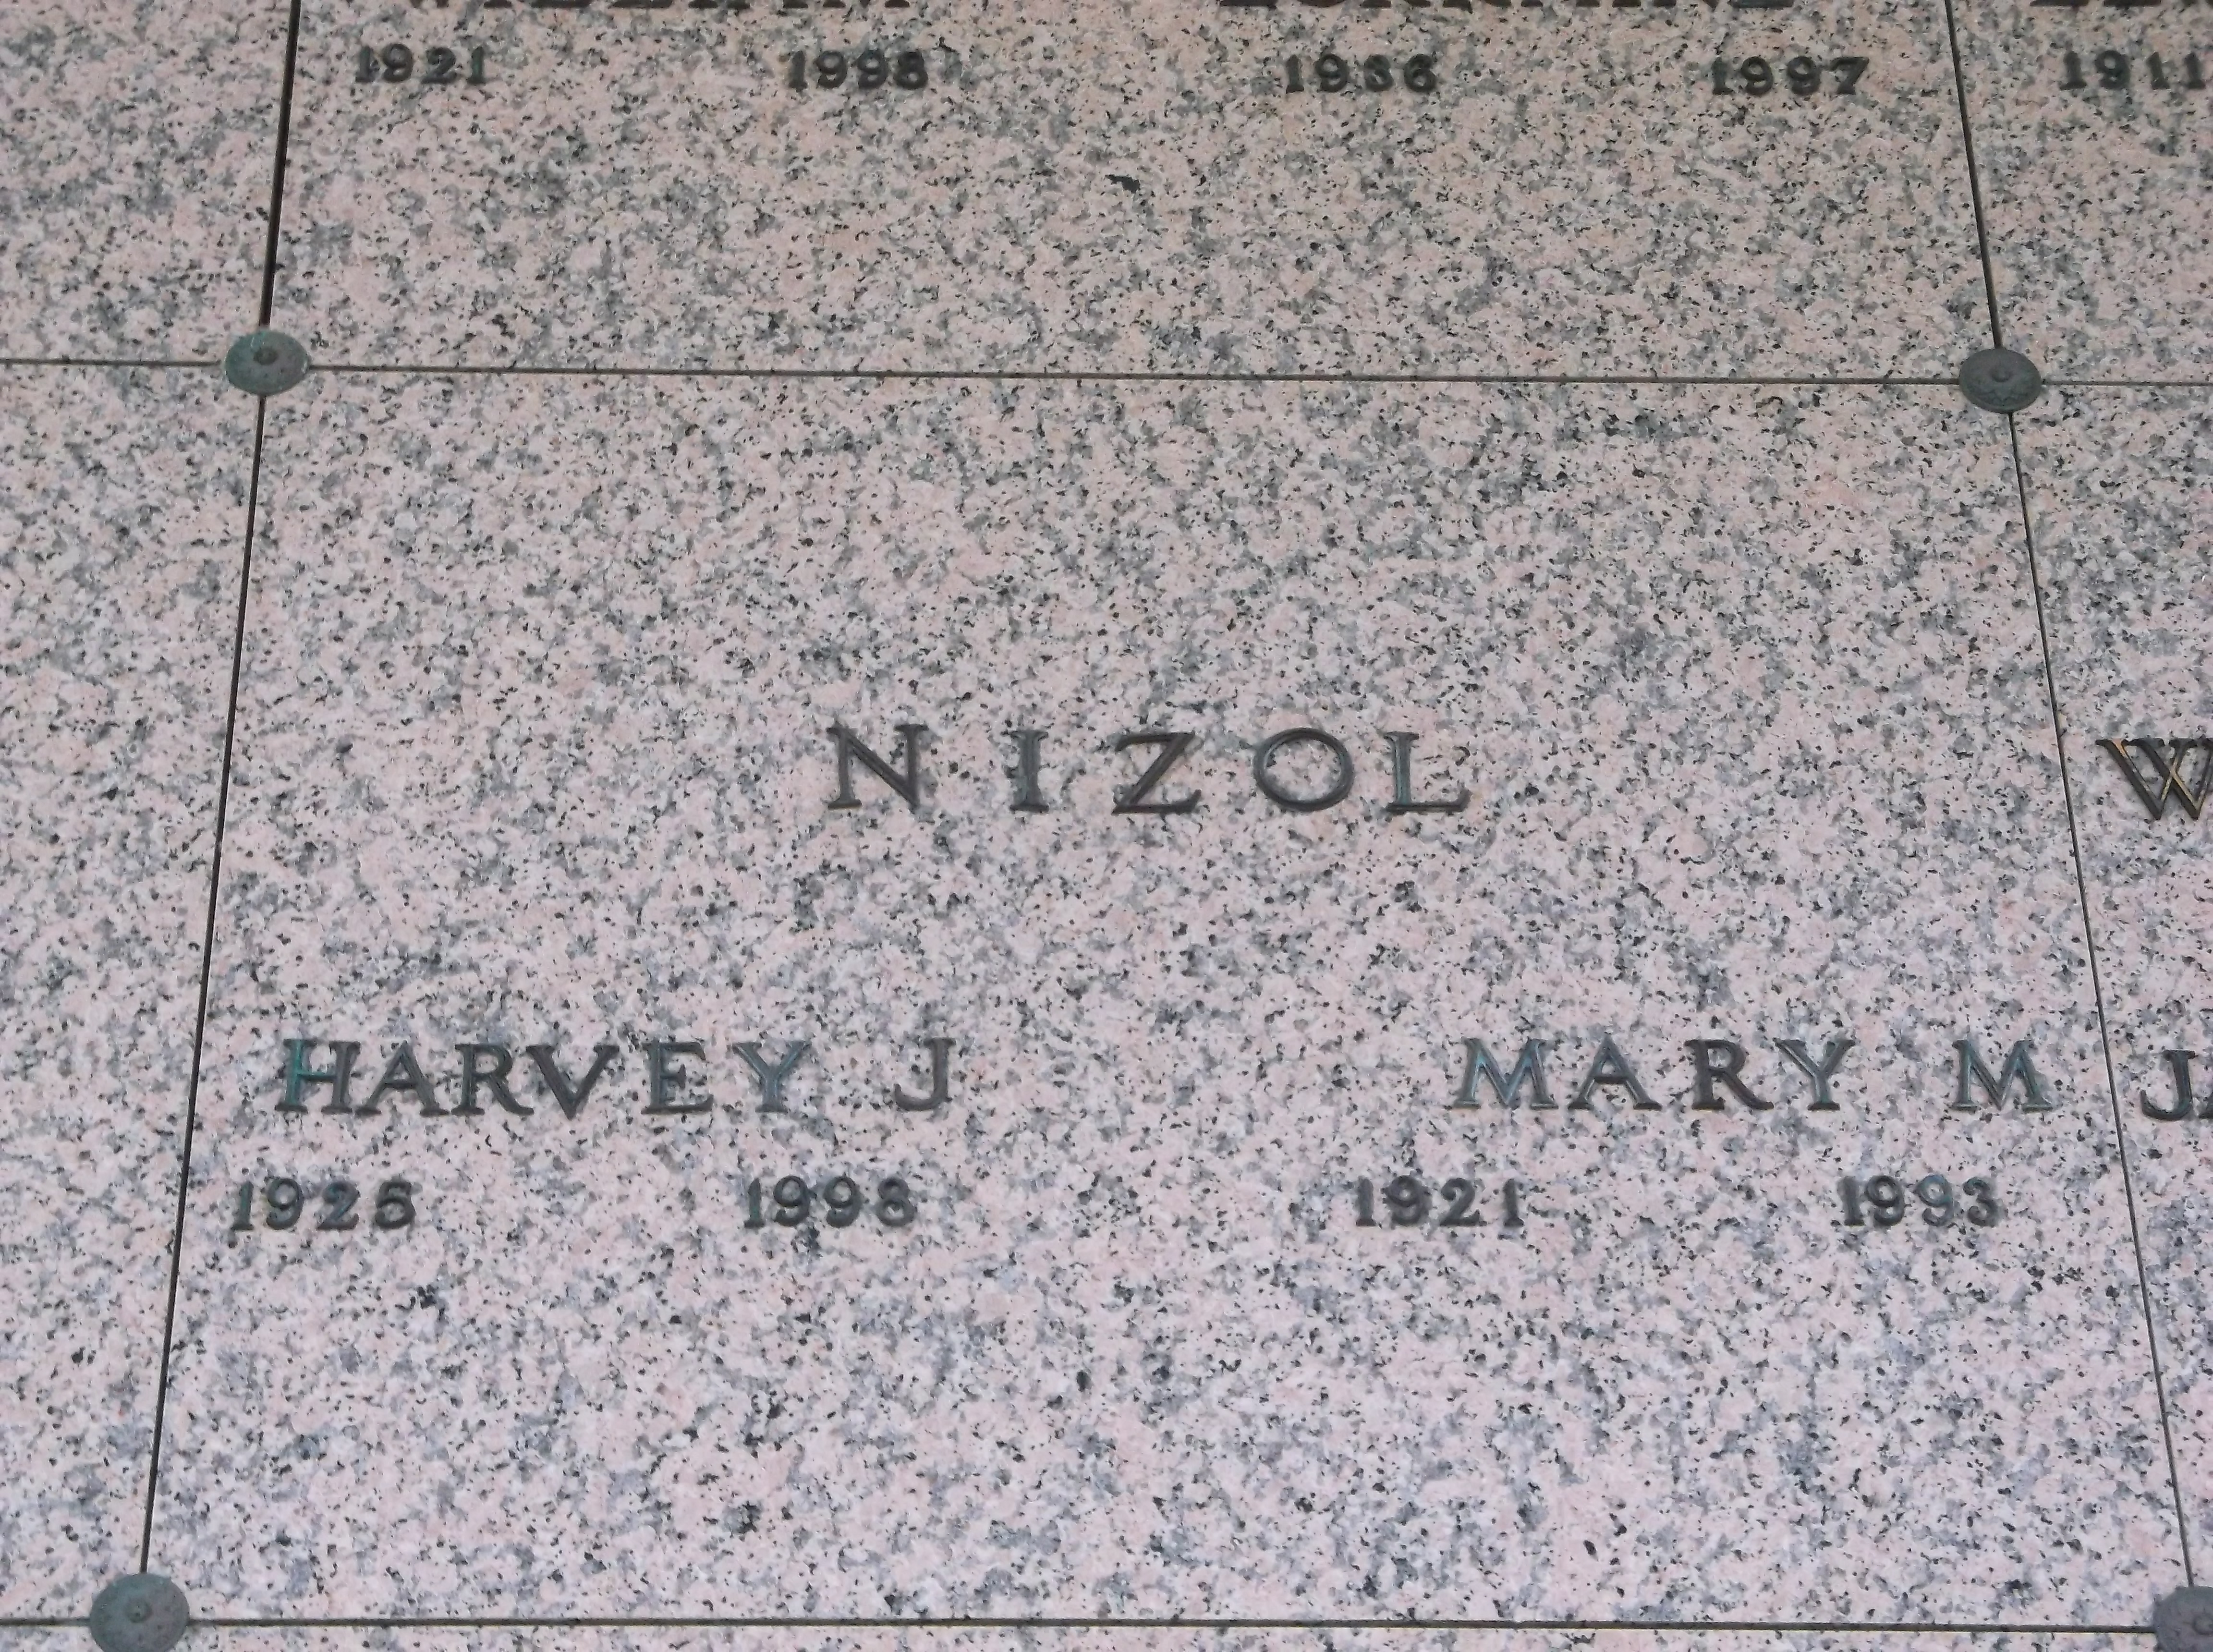 Mary M Nizol